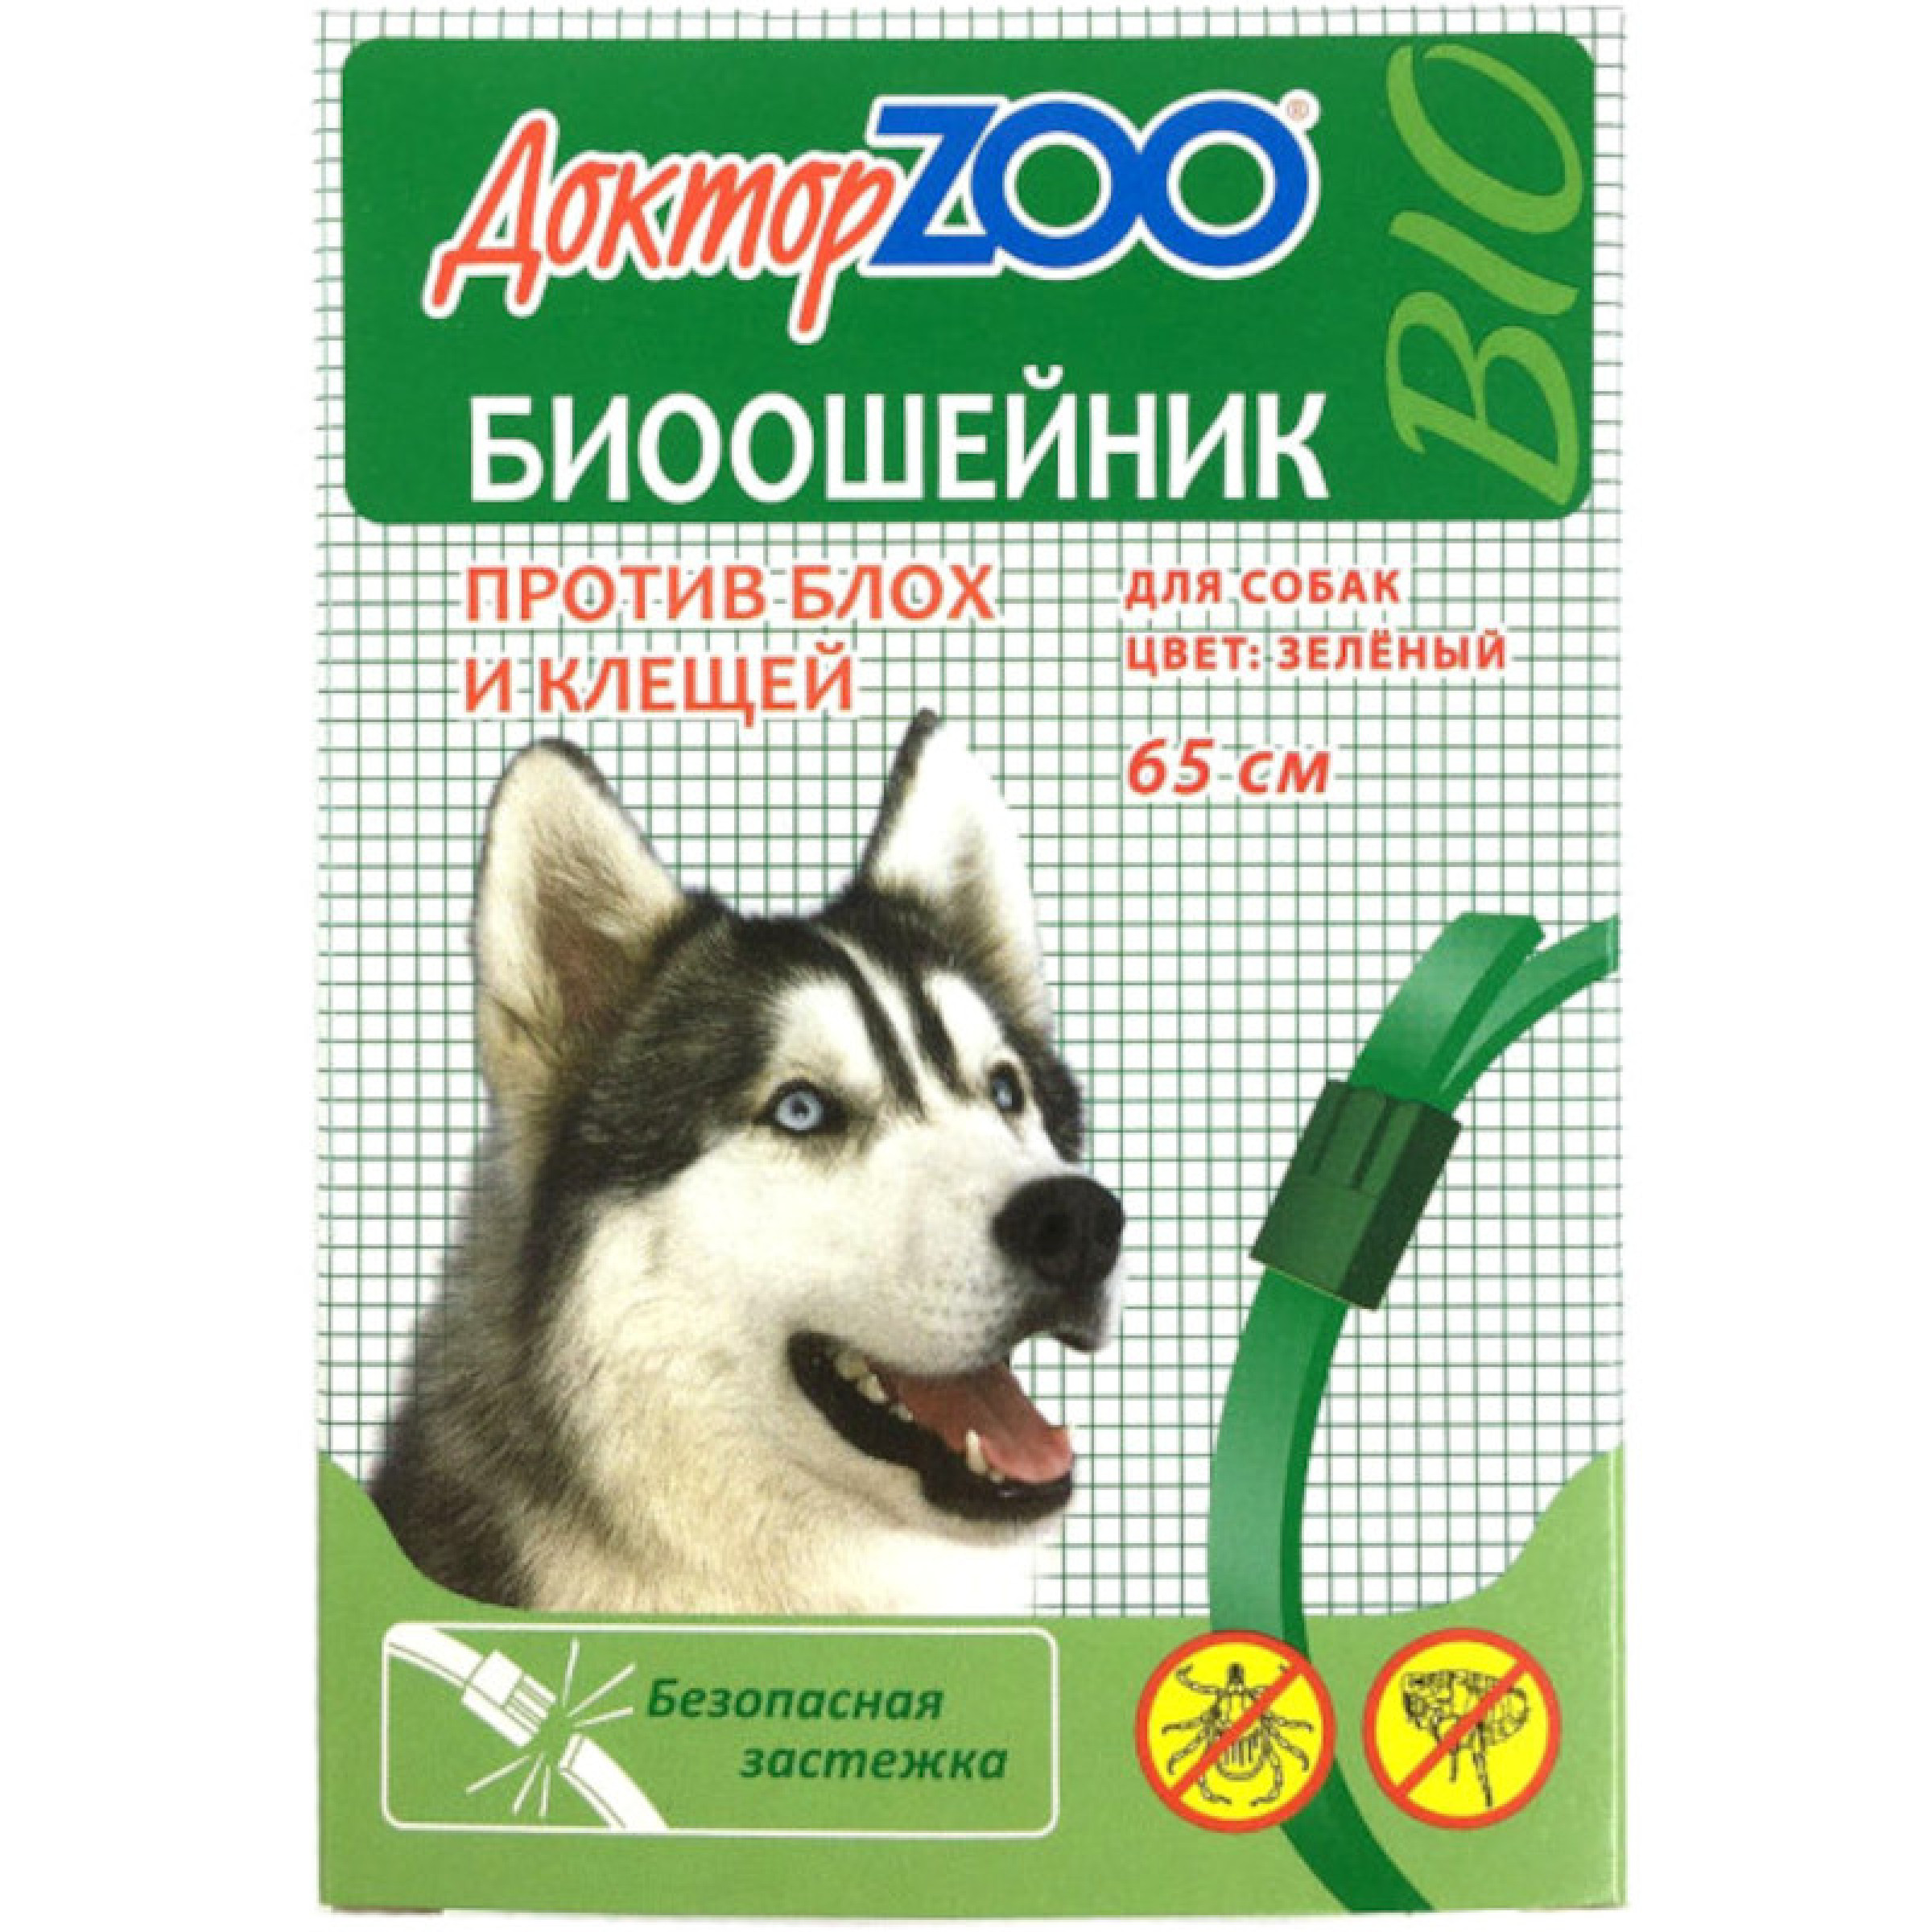 БИОошейник Доктор Zoo репеллентный для собак зеленый, 65 см